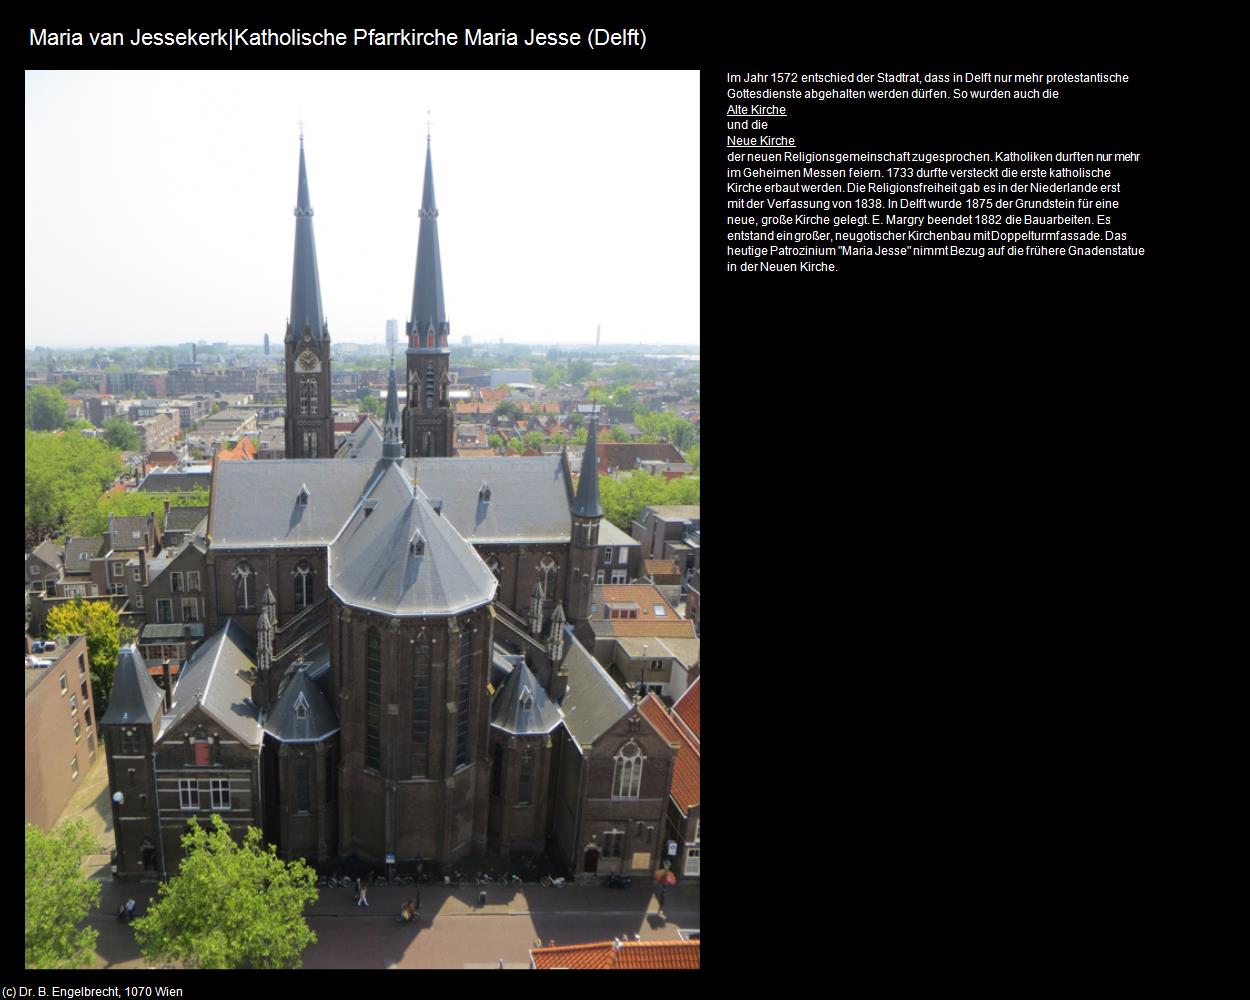 Maria van Jessekerk|Rk. Maria Jesse Kirche (Delft) in Kulturatlas-NIEDERLANDE(c)B.Engelbrecht